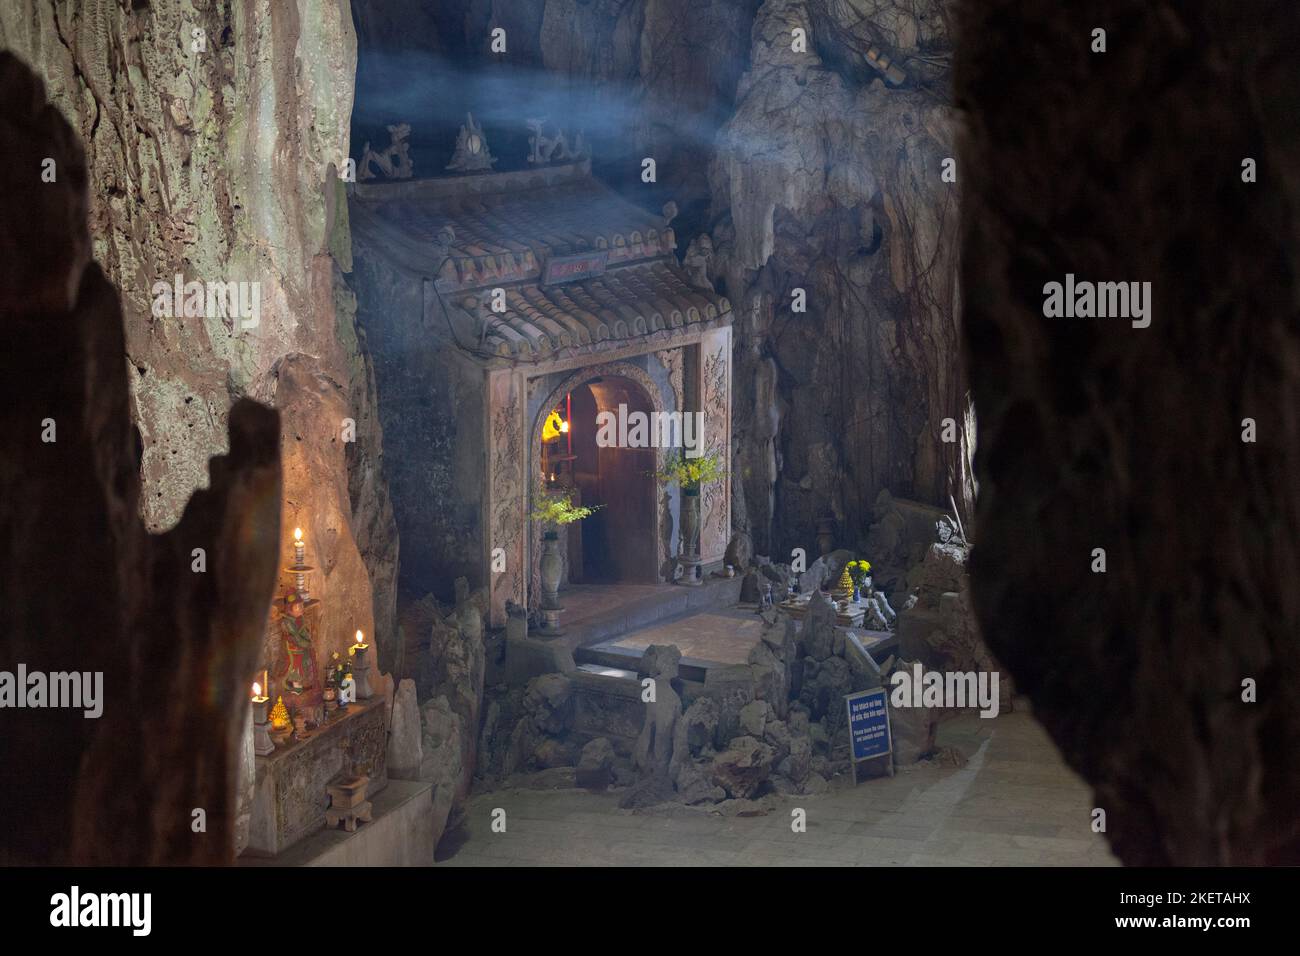 Santuario all'interno della Grotta di Huyen Khong nelle Montagne di marmo, da Nang. Foto Stock